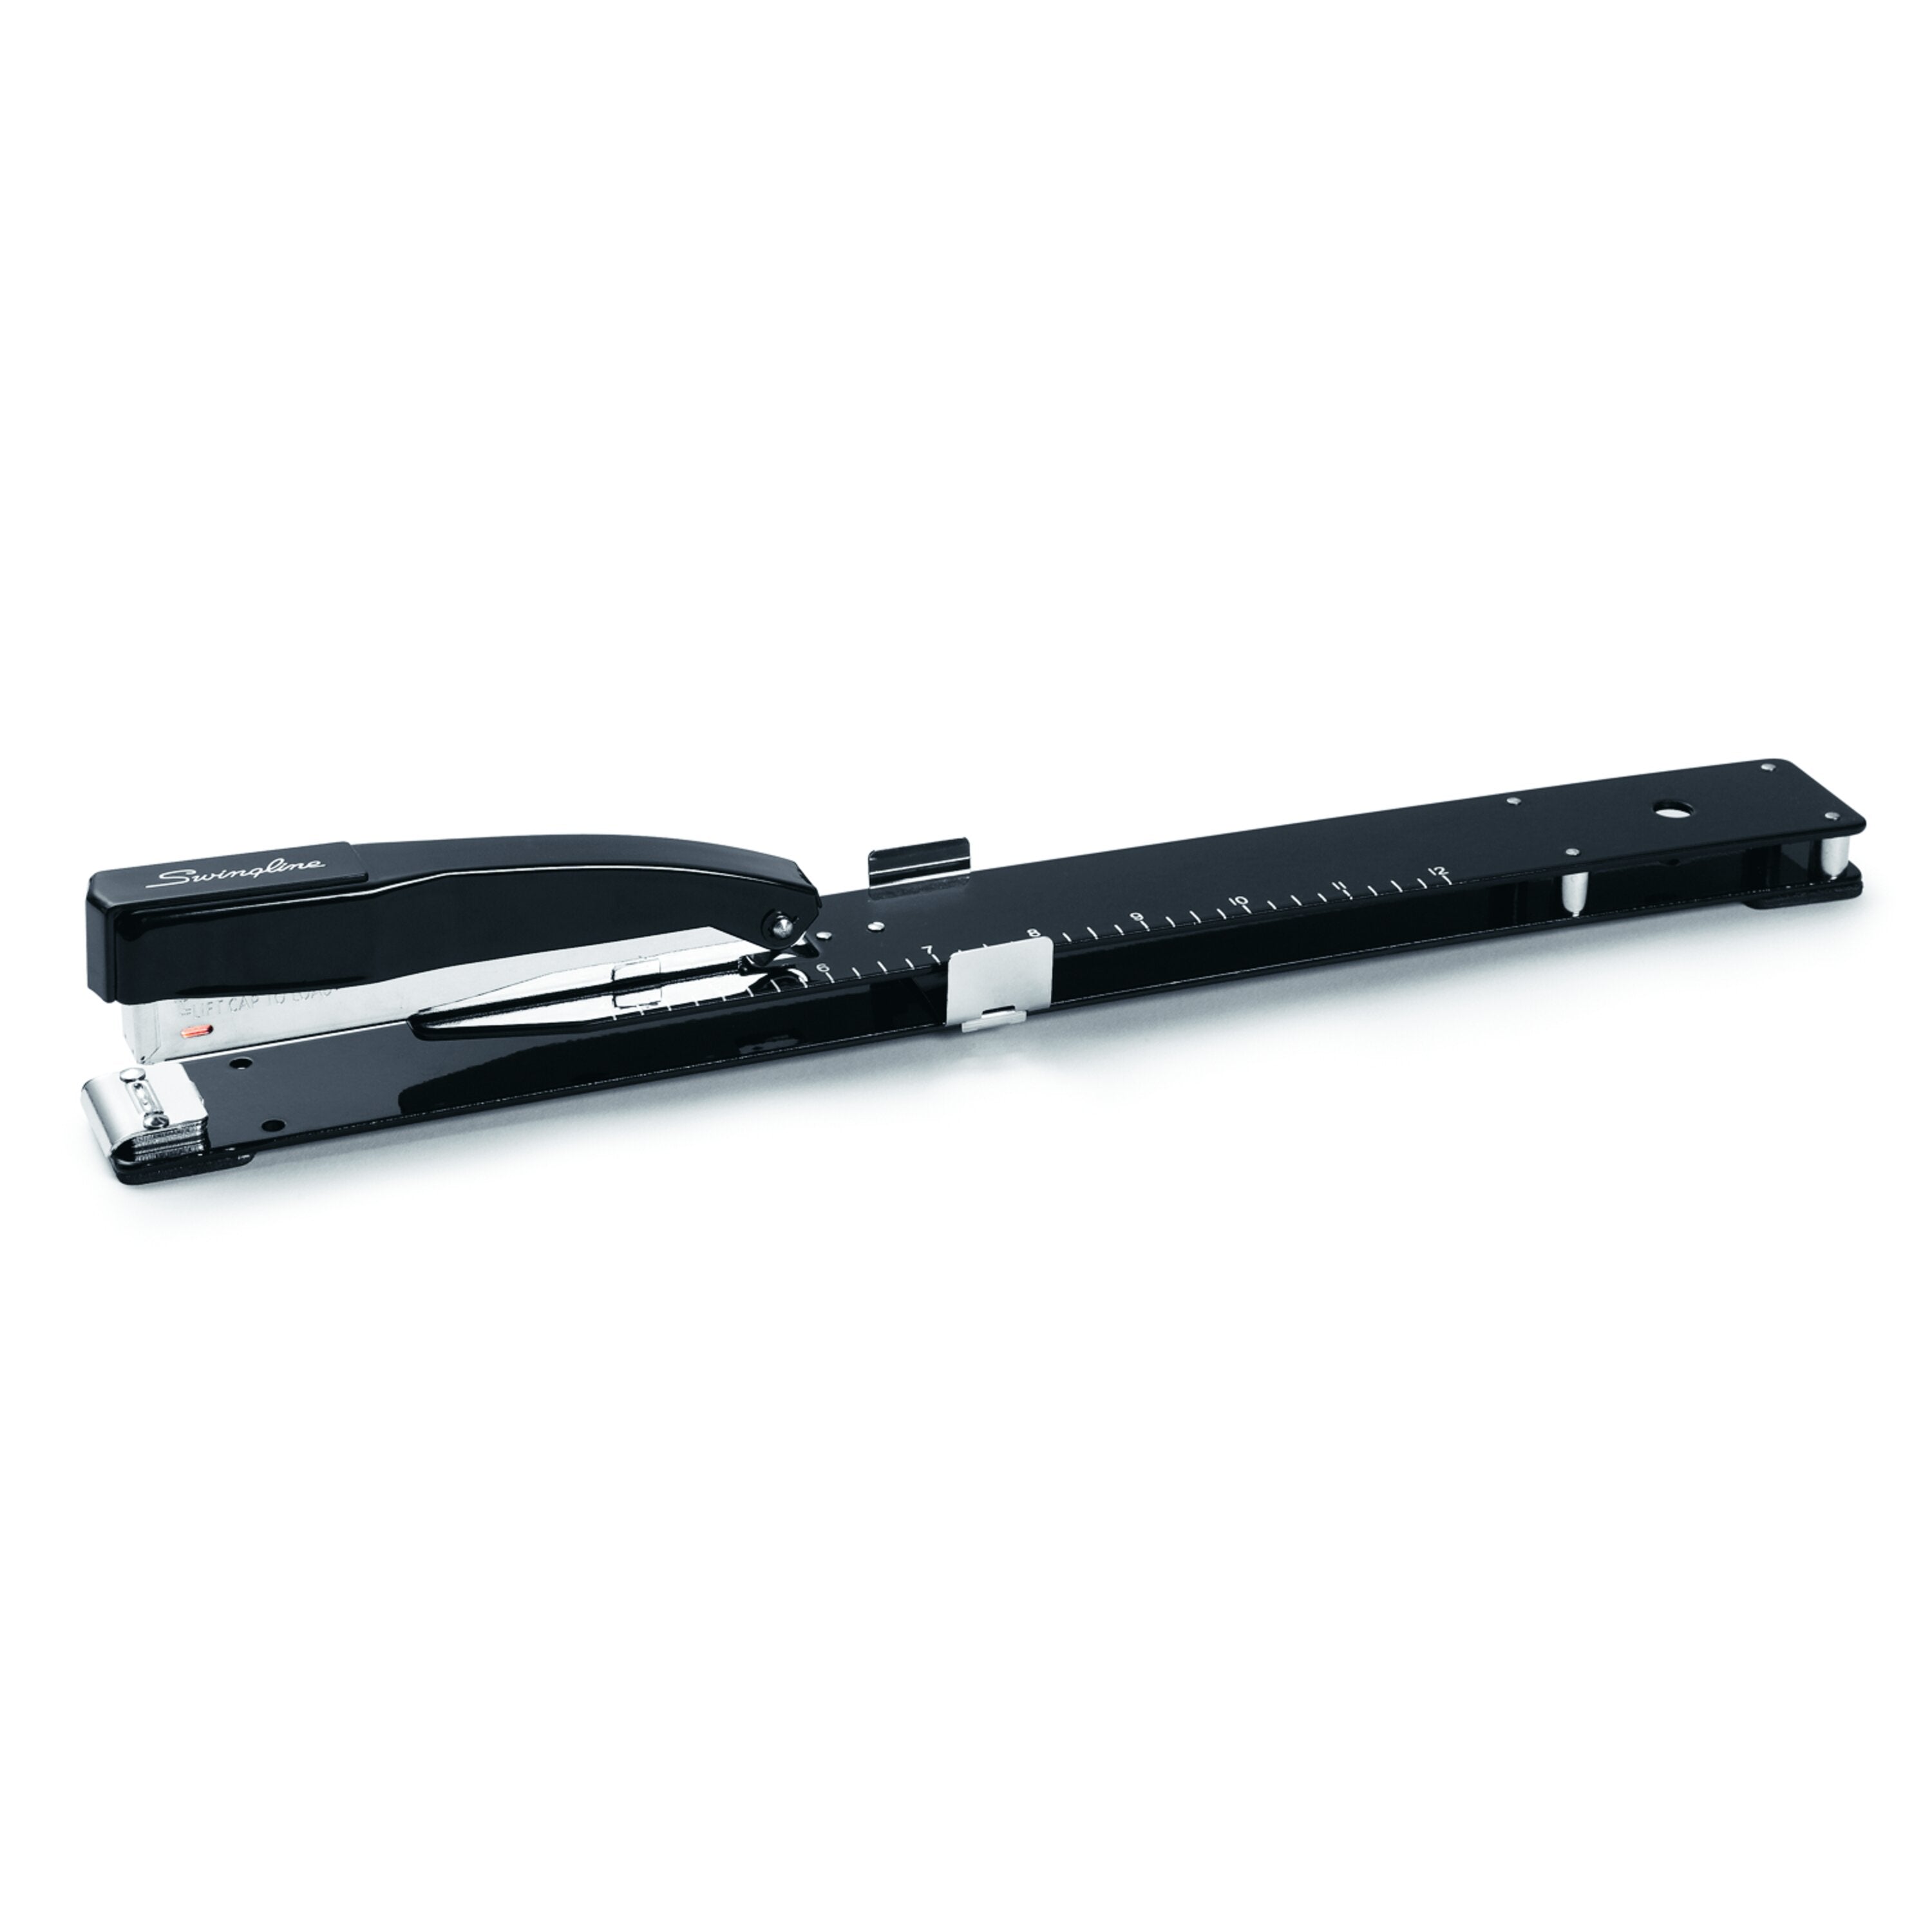 Swingline® Long Reach Stapler, Model 12LR, Specialty Stapler